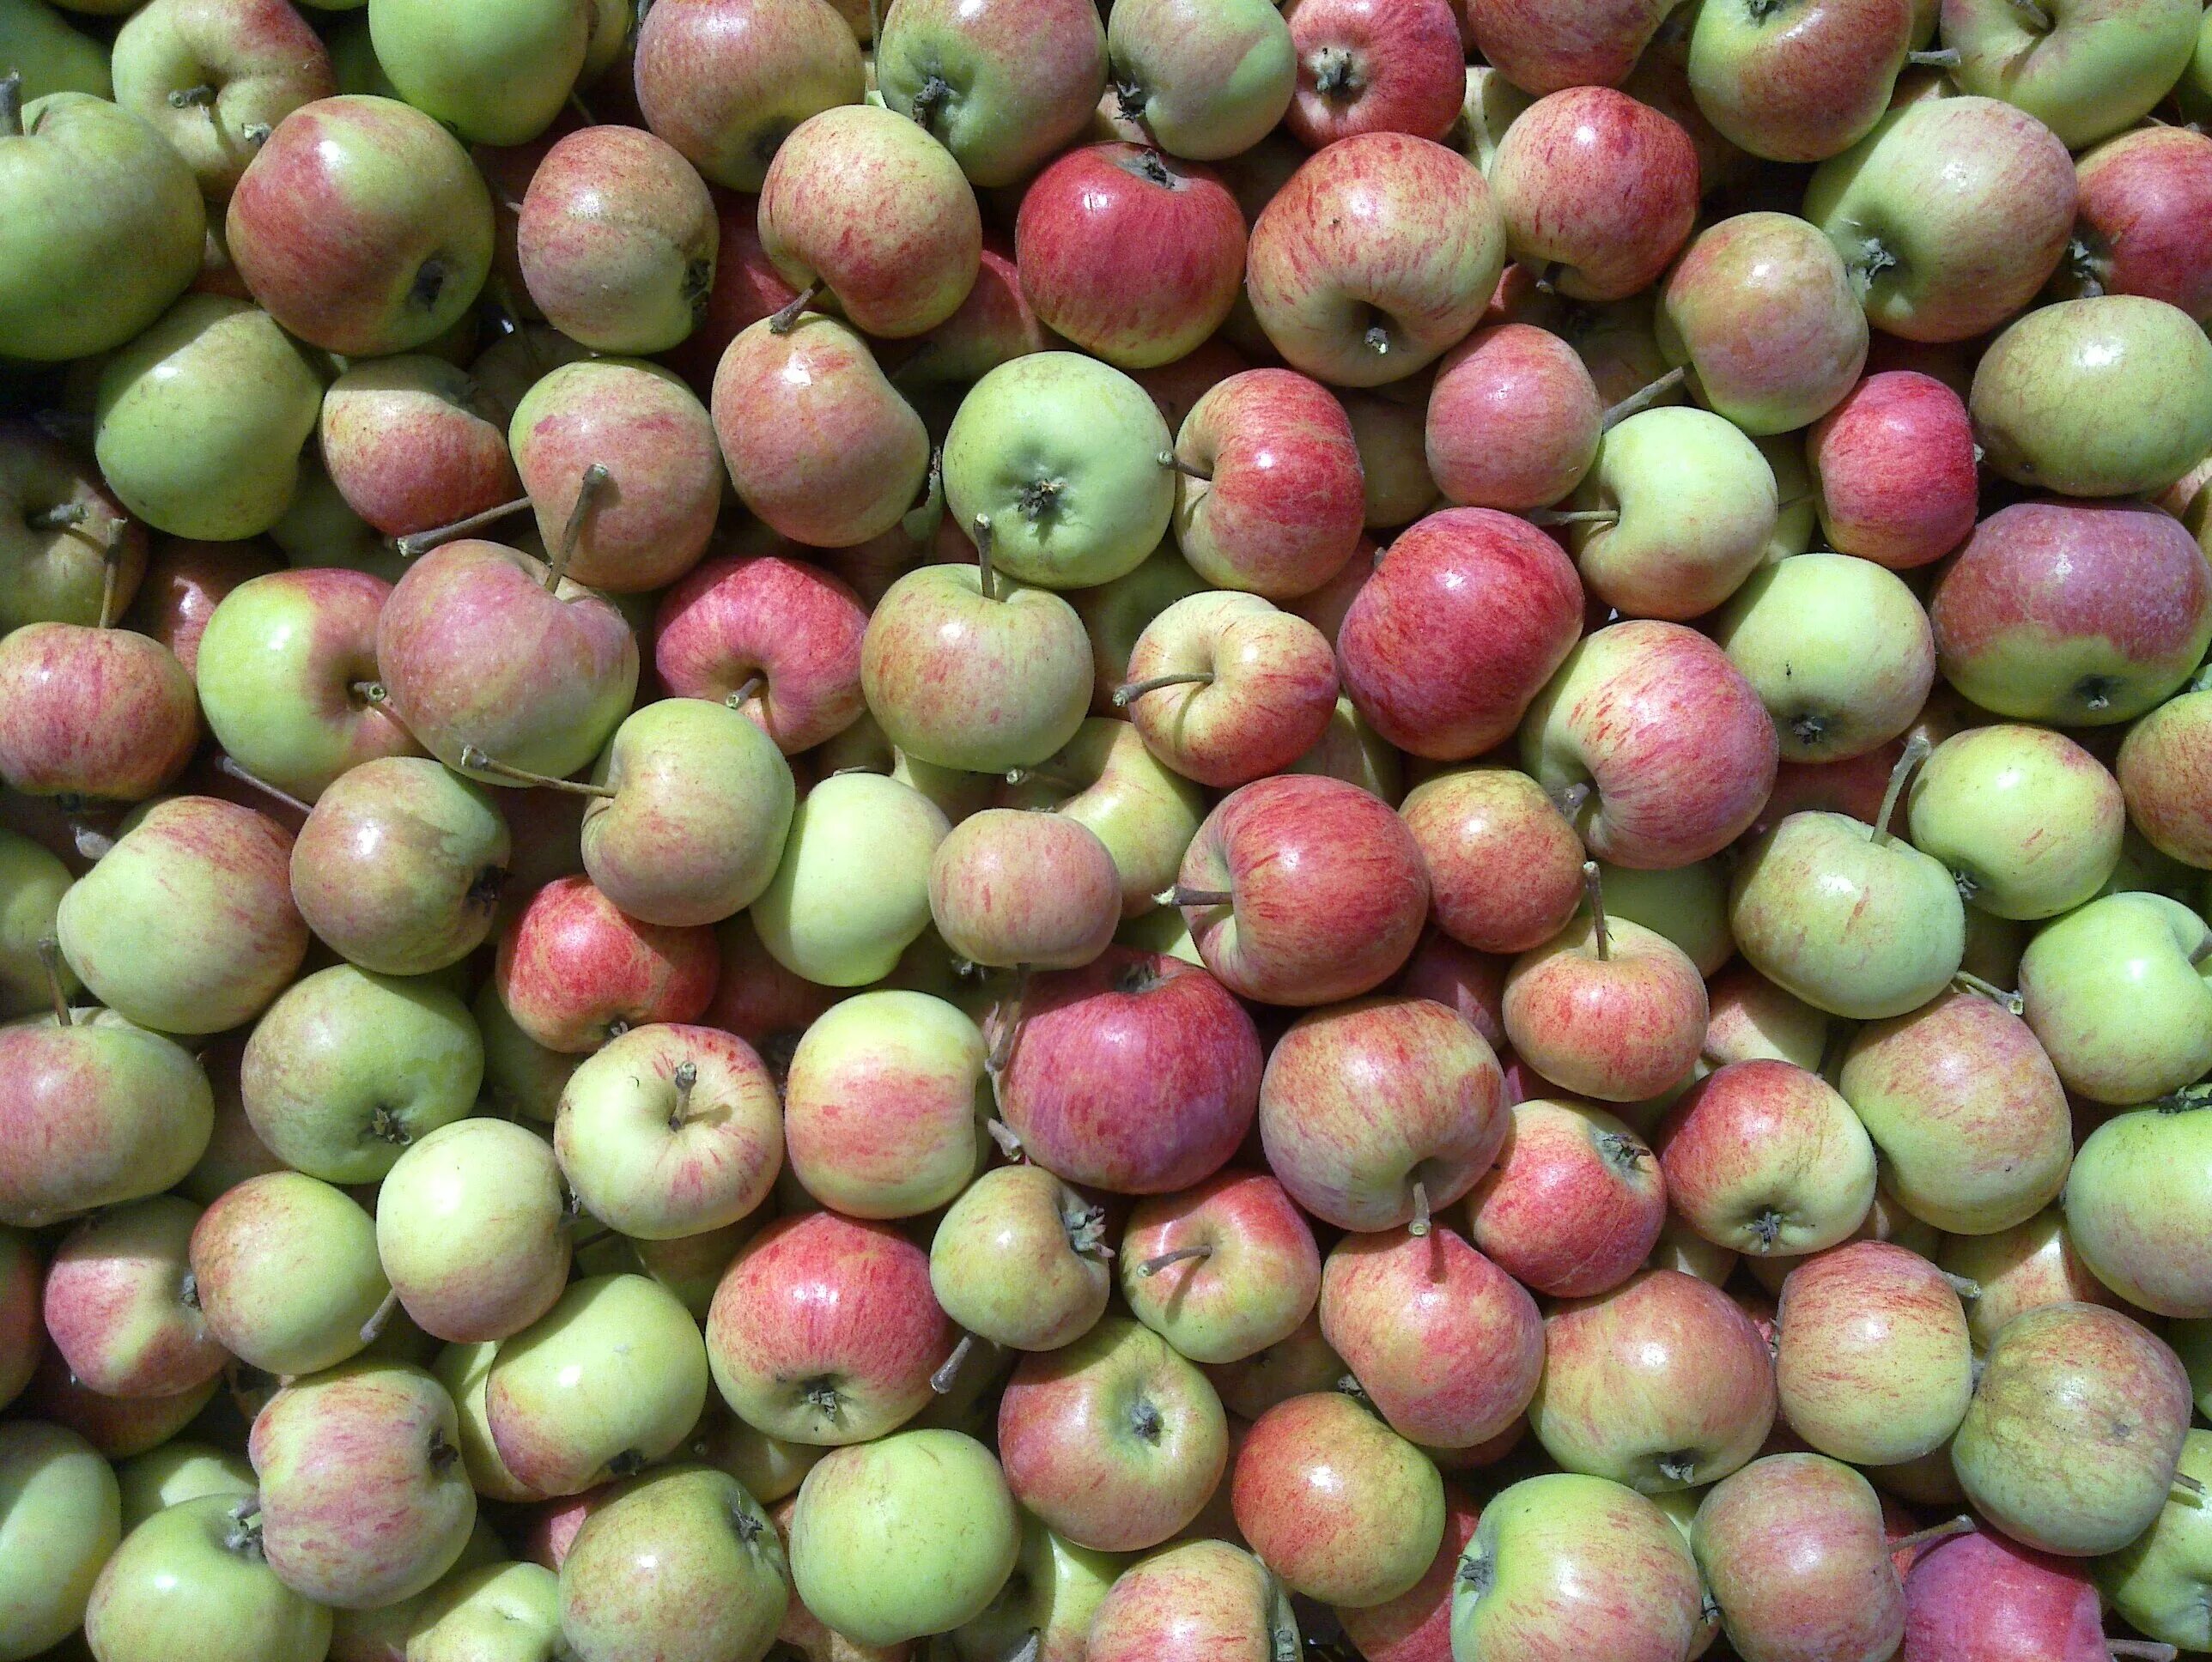 Apple turkey. Урожай яблок. Турецкие яблоки. Яблоки свежие. Разнообразие яблок.